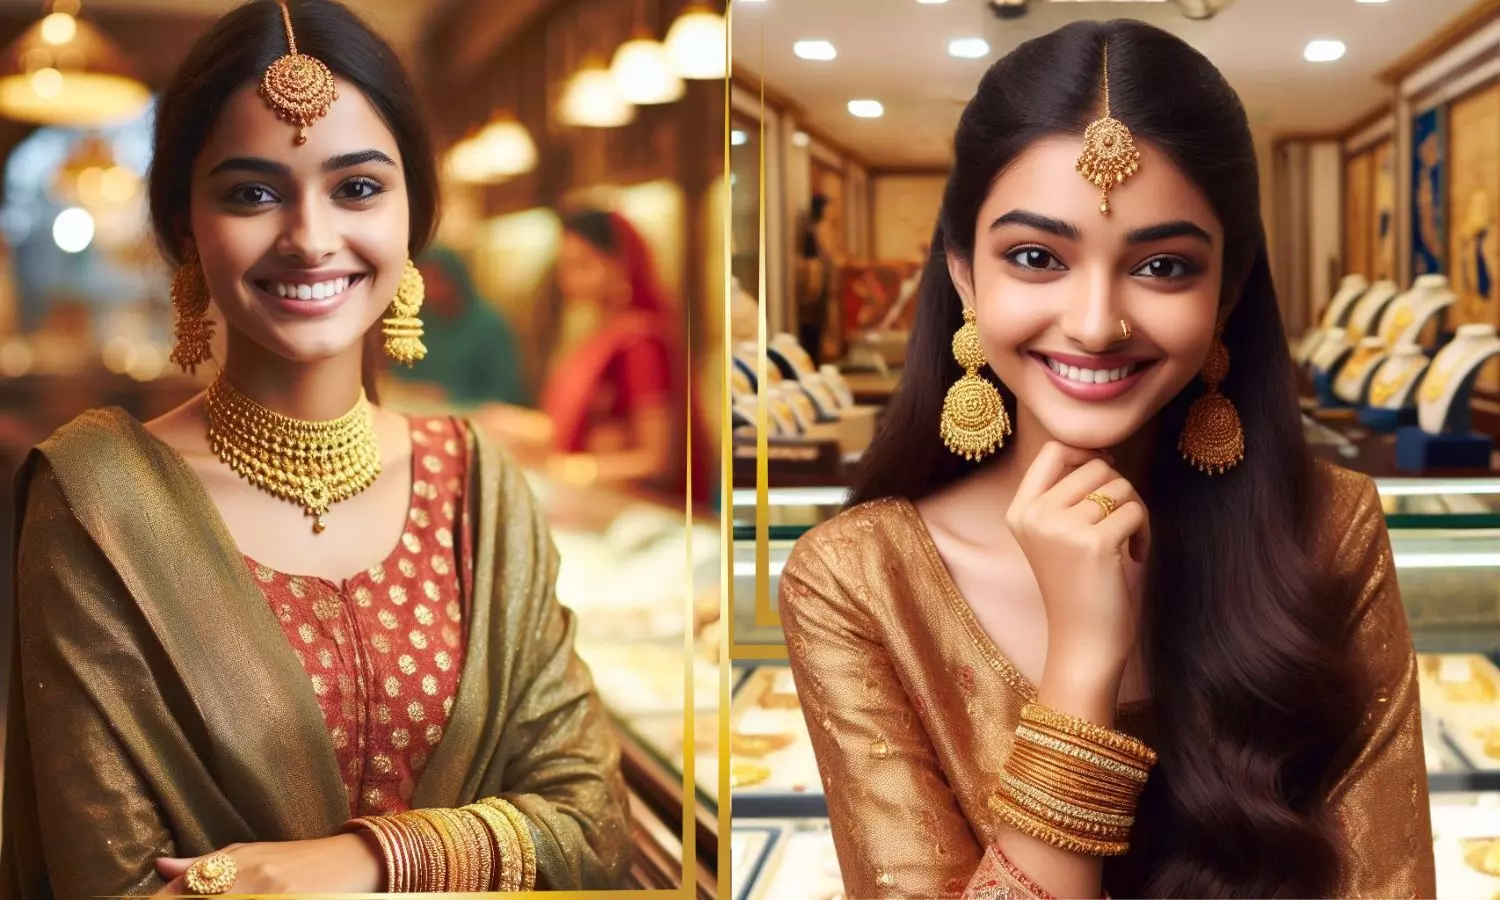 Ai image of girls wearing gold jewelry